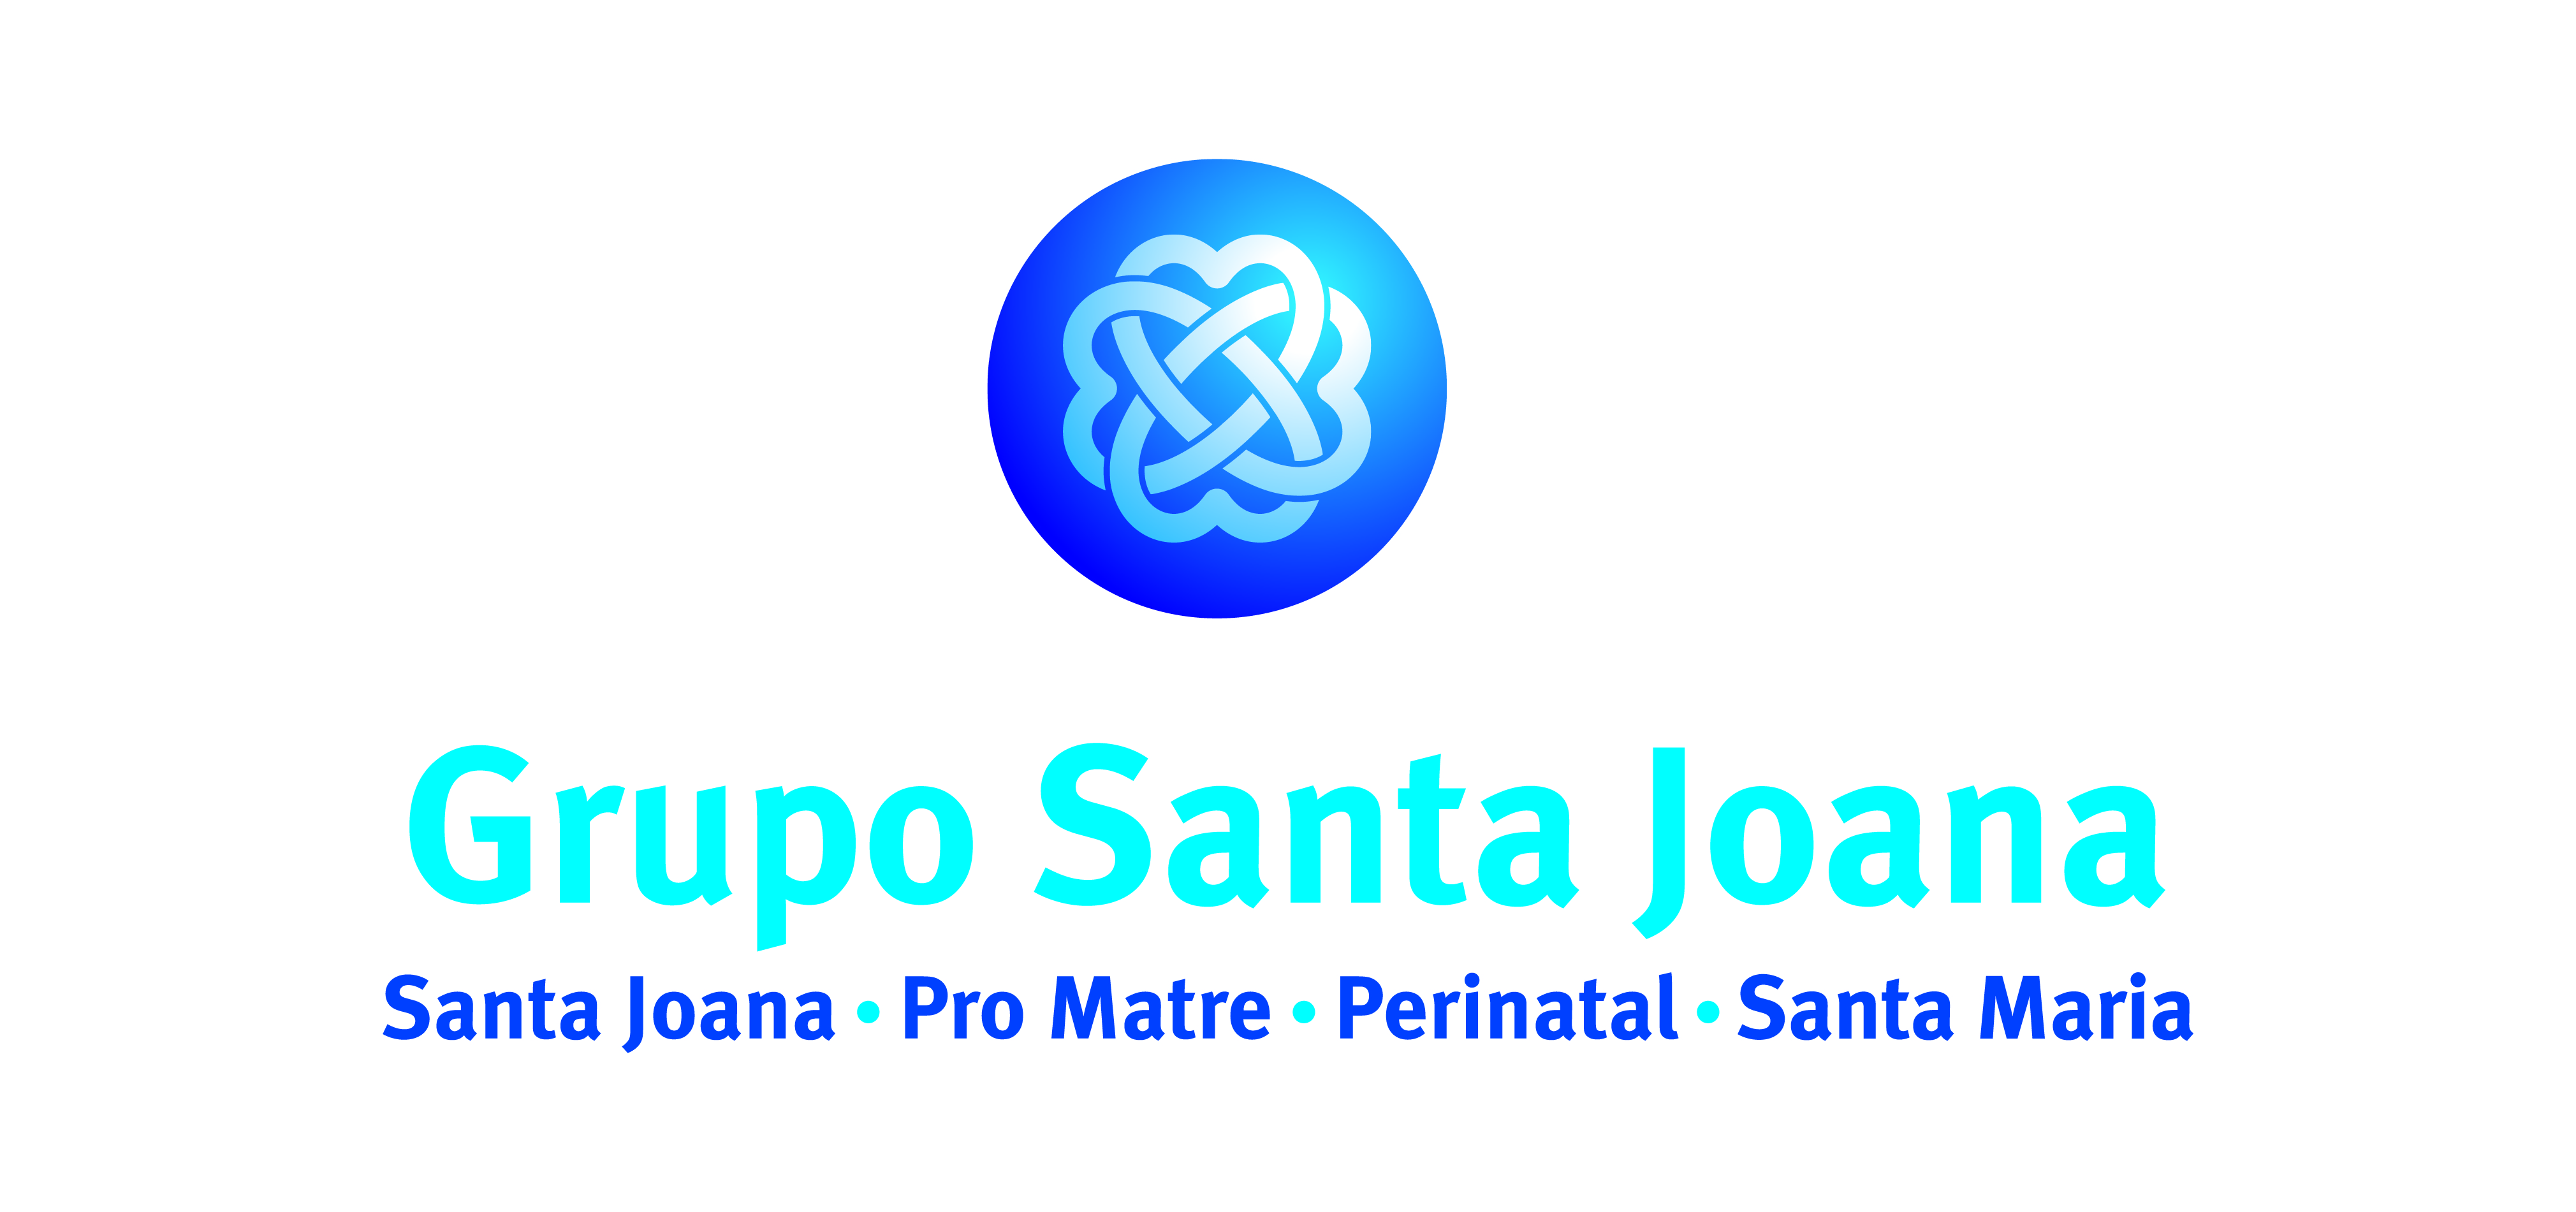 Grupo Santa Joana Hospital E Maternidade Santa Maria 4373